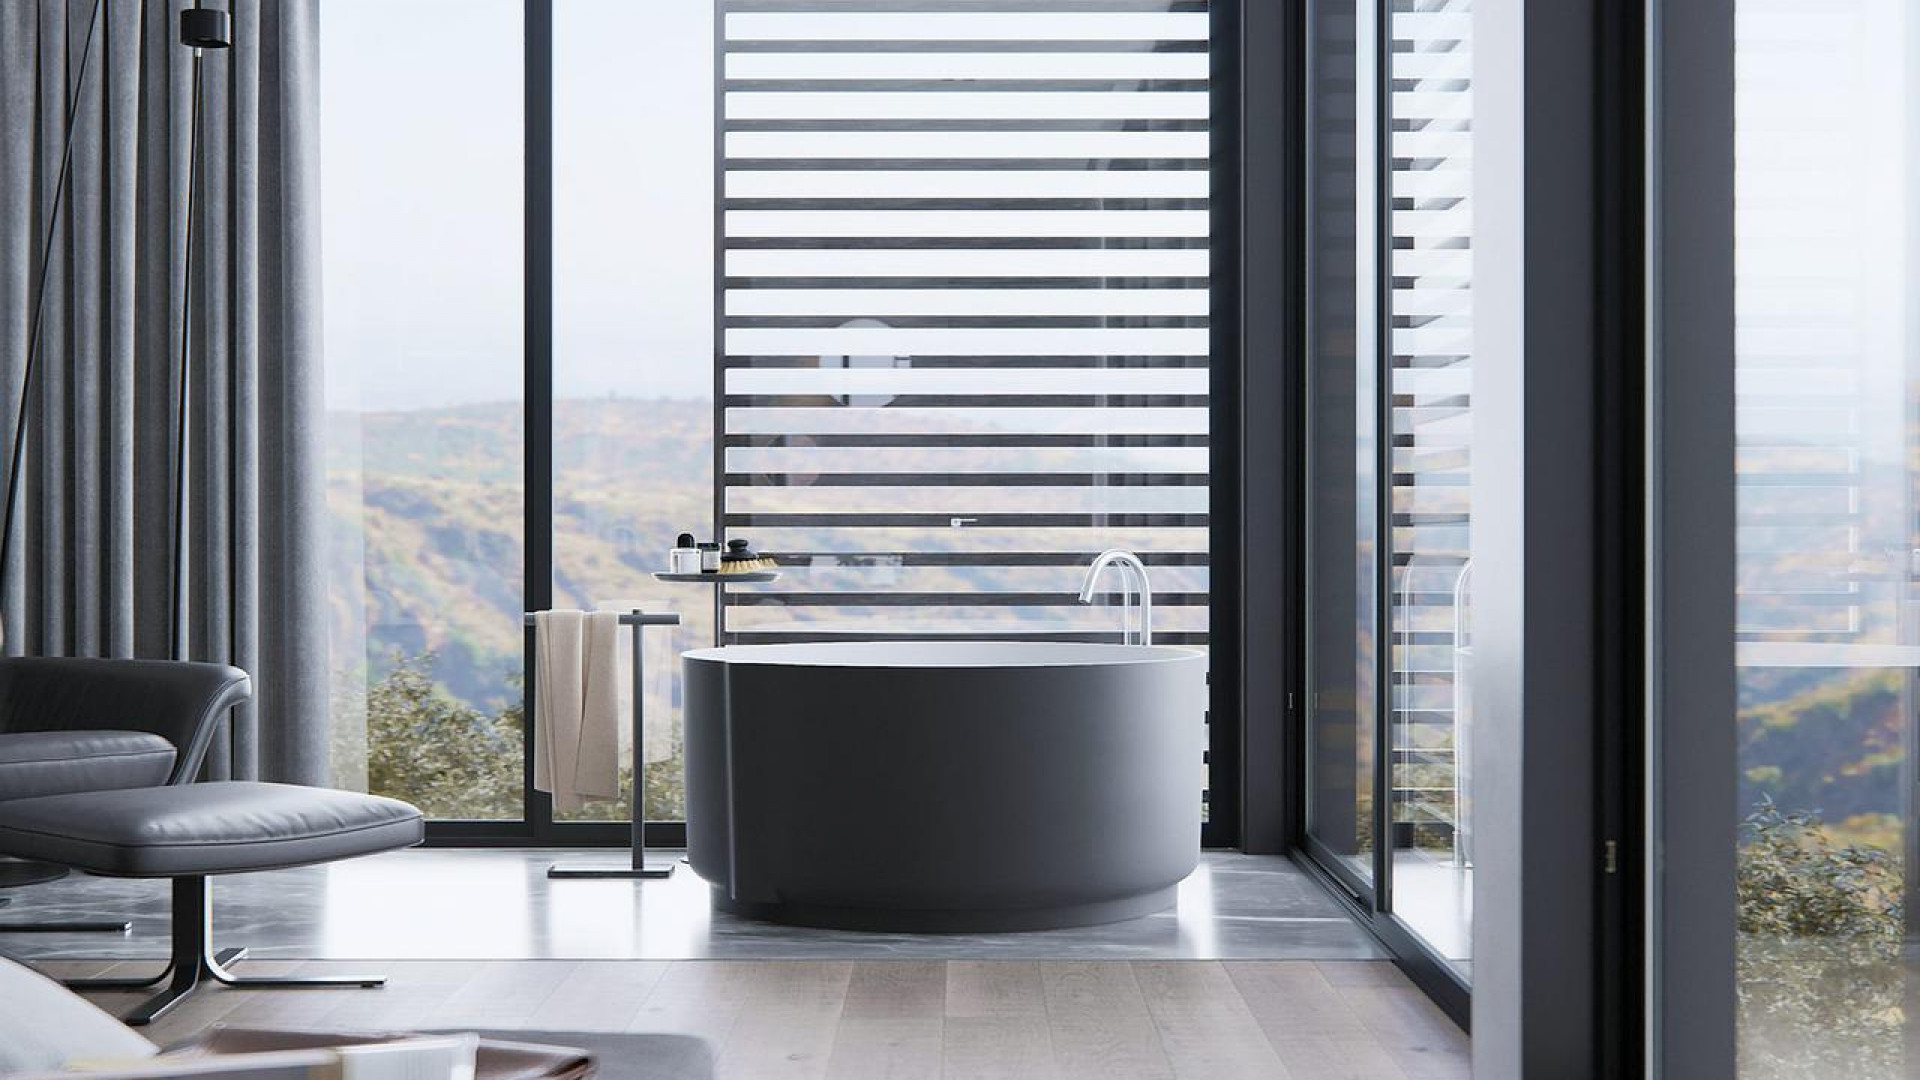 Comment redonner une petite touche de modernité à votre salle de bain ?